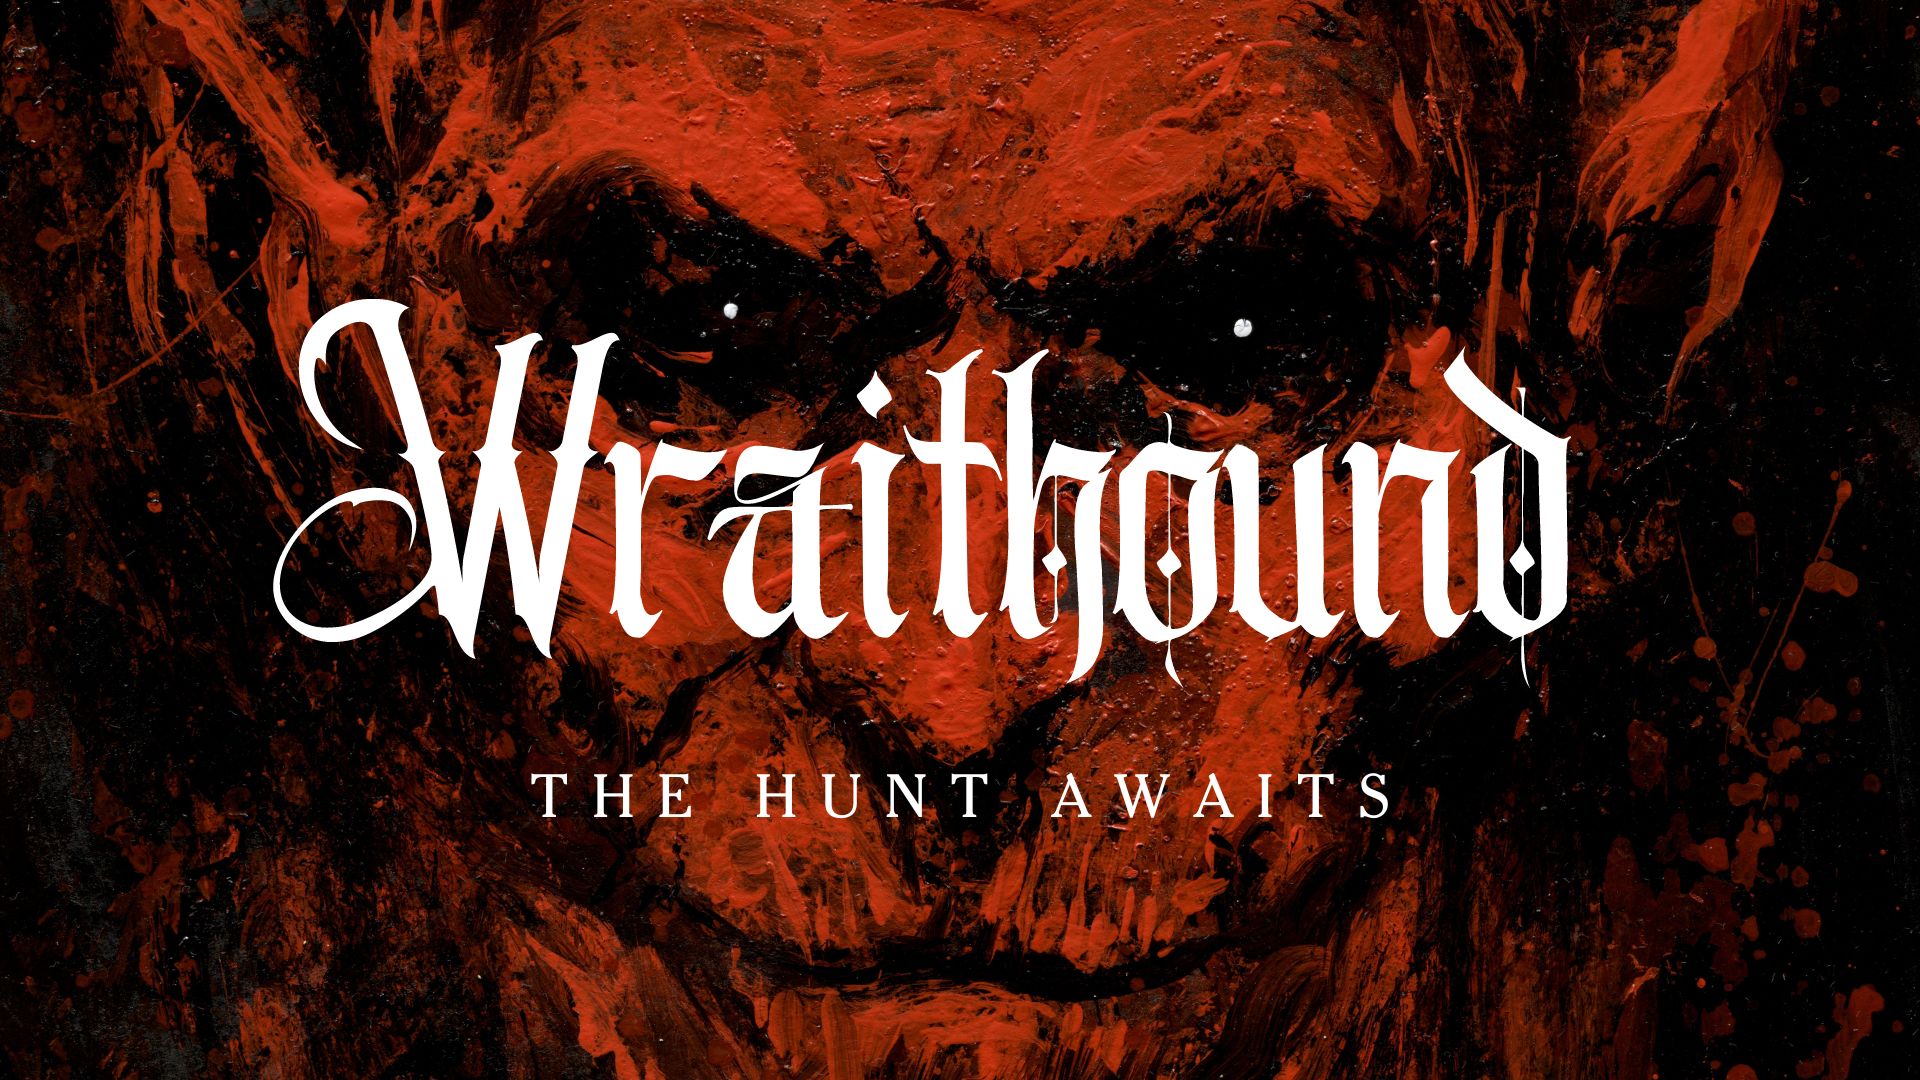 Wraithound